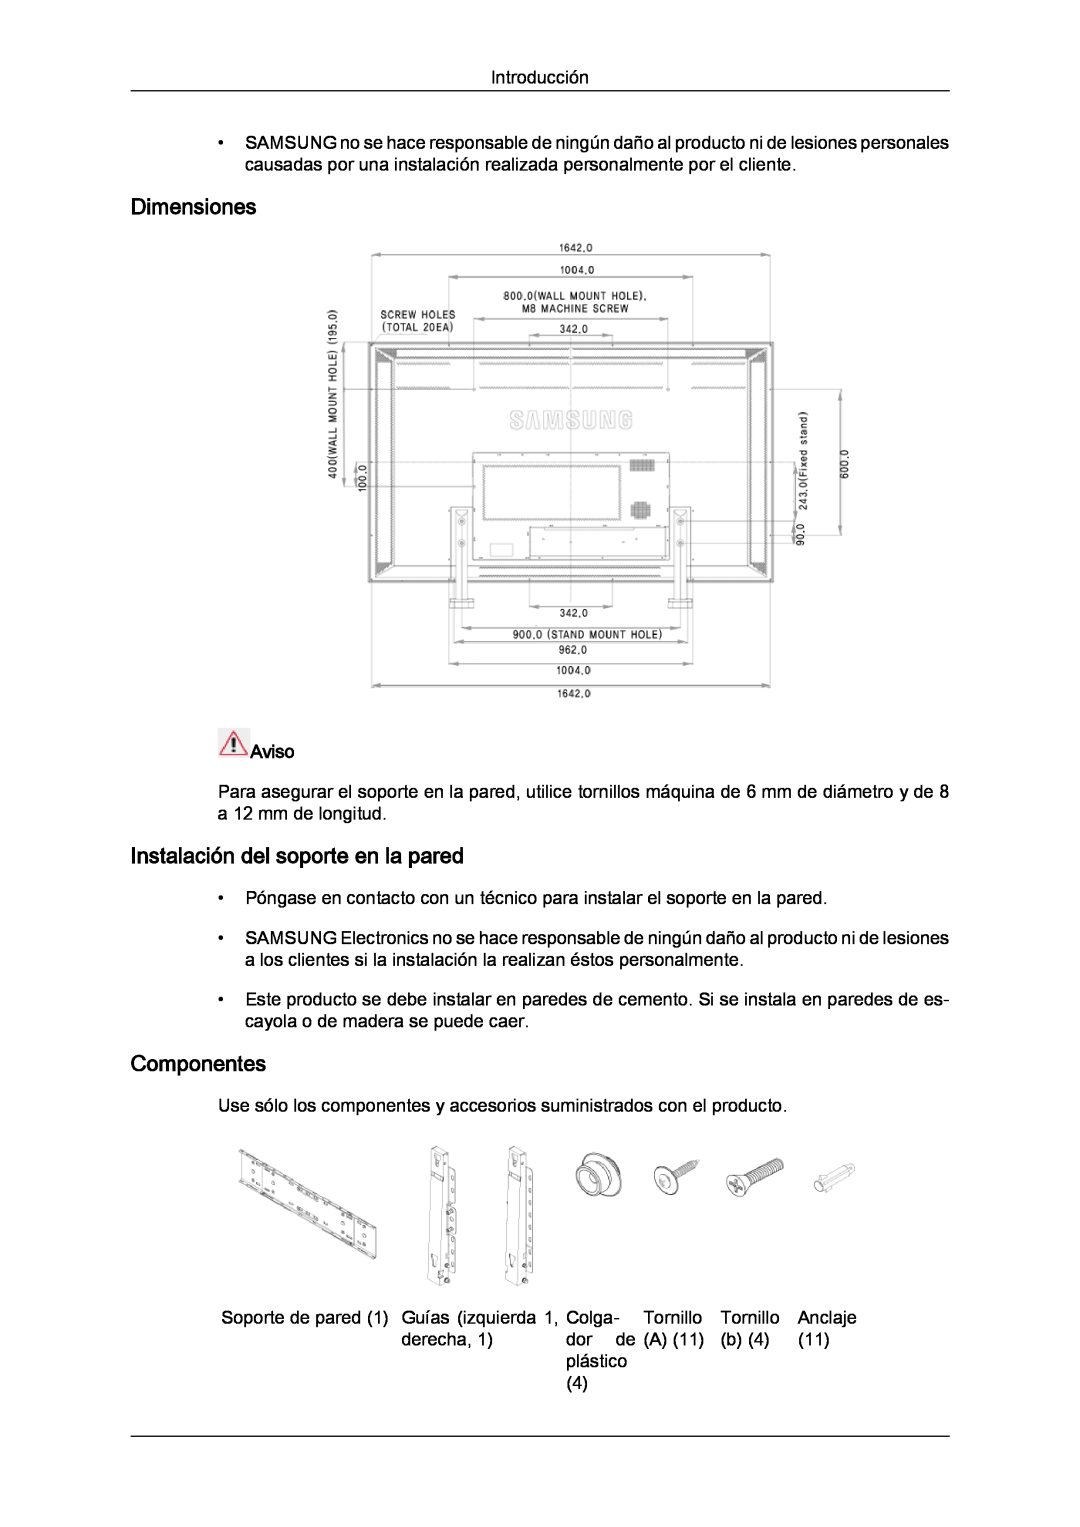 Samsung LH82TCUMBG/EN, LH70TCUMBG/EN manual Dimensiones, Instalación del soporte en la pared, Componentes, Aviso 